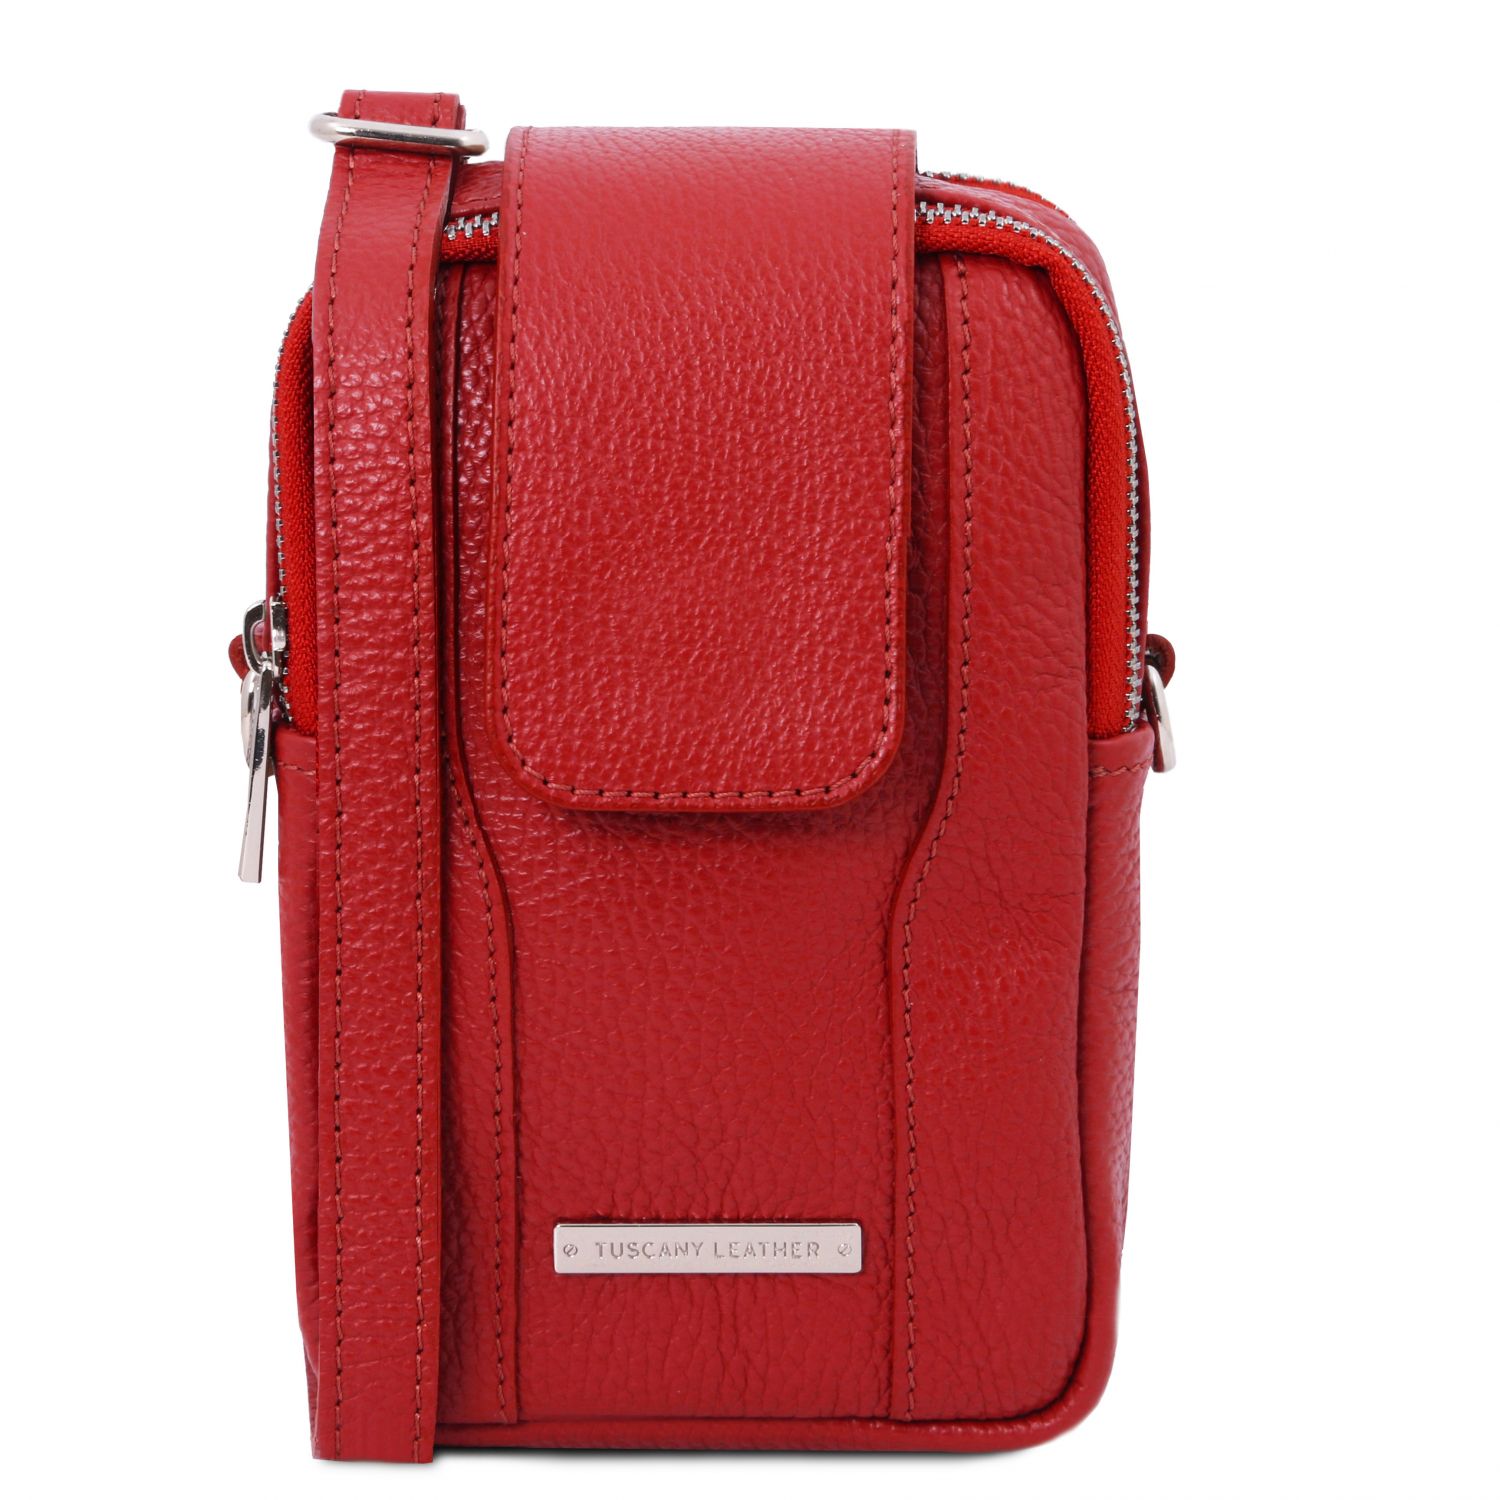 TL Bag - Sac bandoulière pour portable en cuir souple - Rouge Lipstick (TL141698)